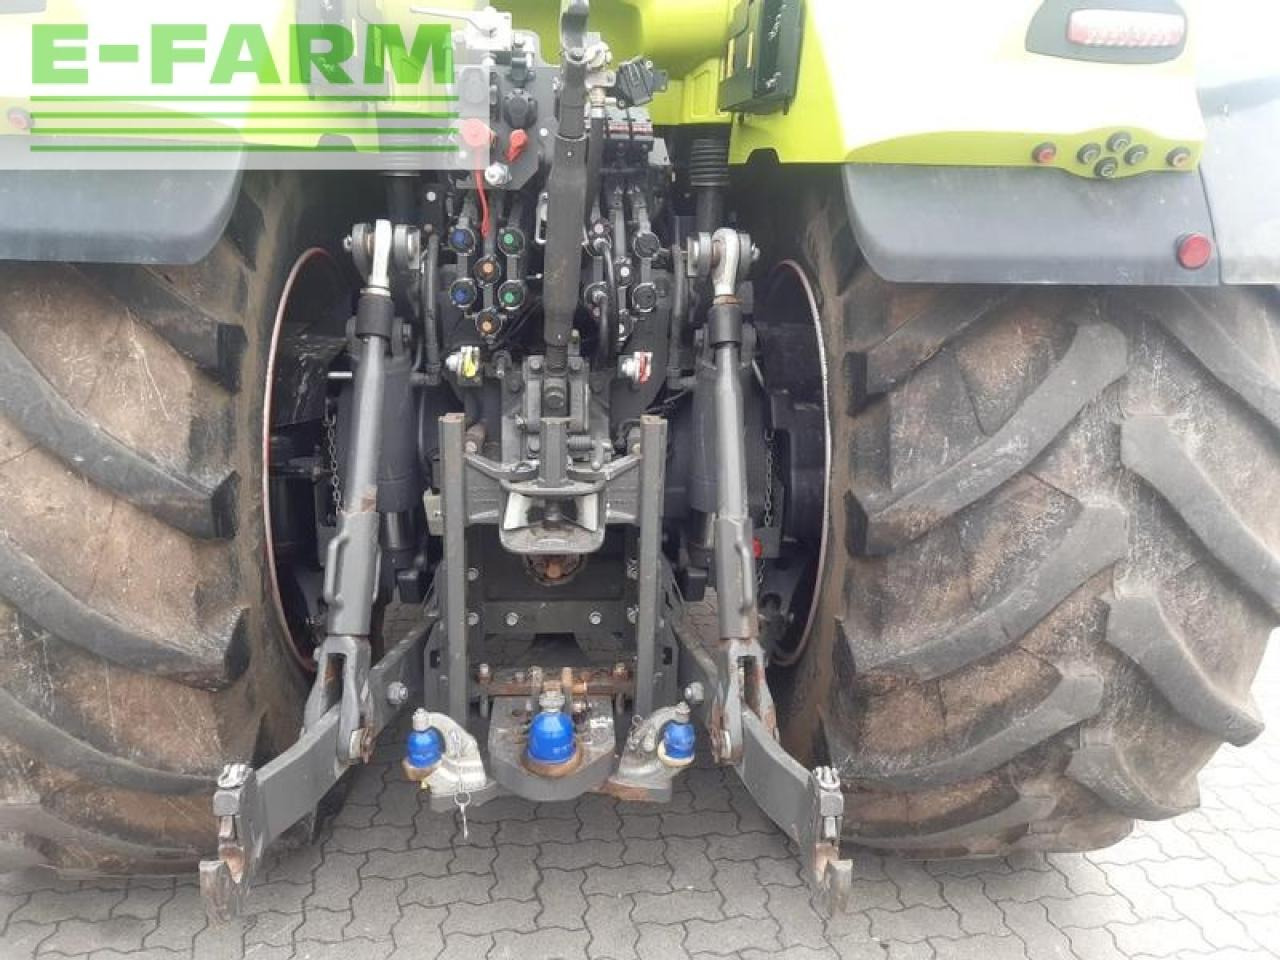 Farm tractor CLAAS axion 950 cmatic ctic